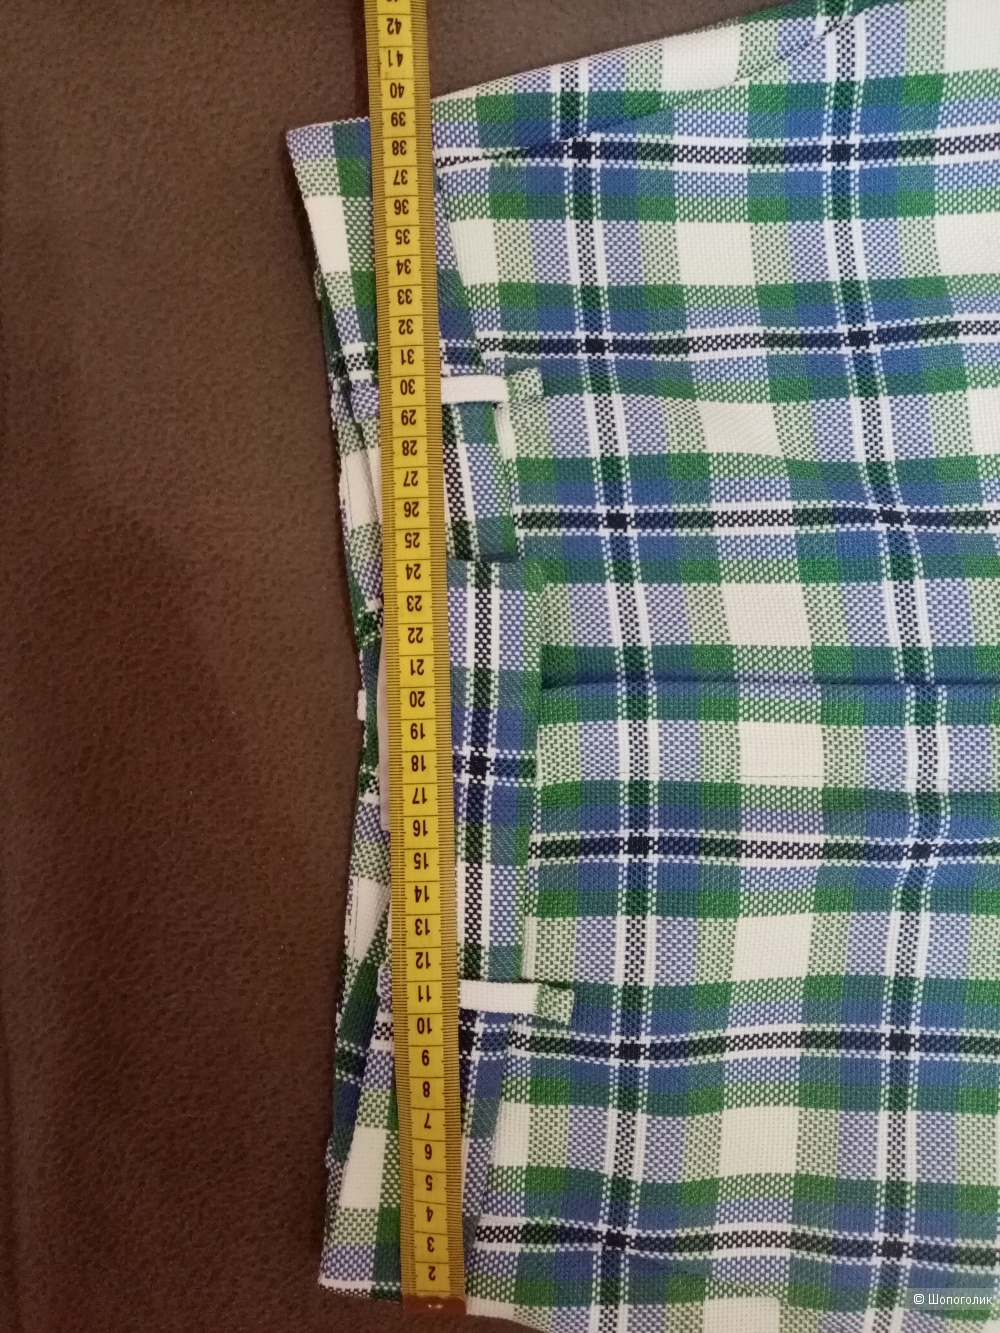 Uterque брюки размер М сине - зелёные